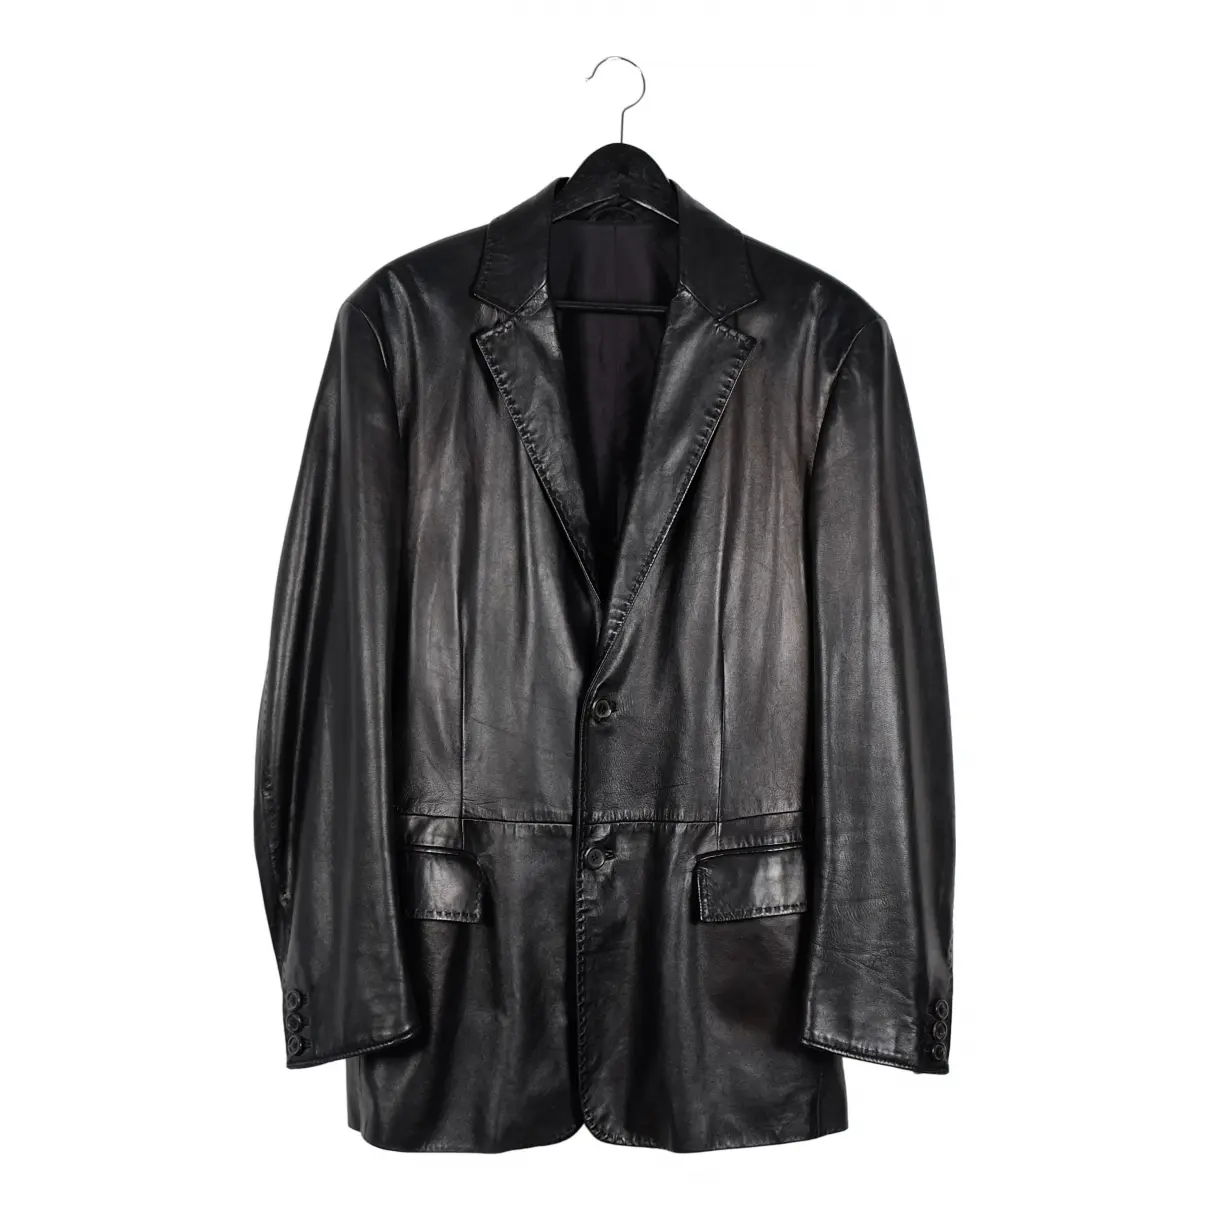 Leather jacket Baldessarini